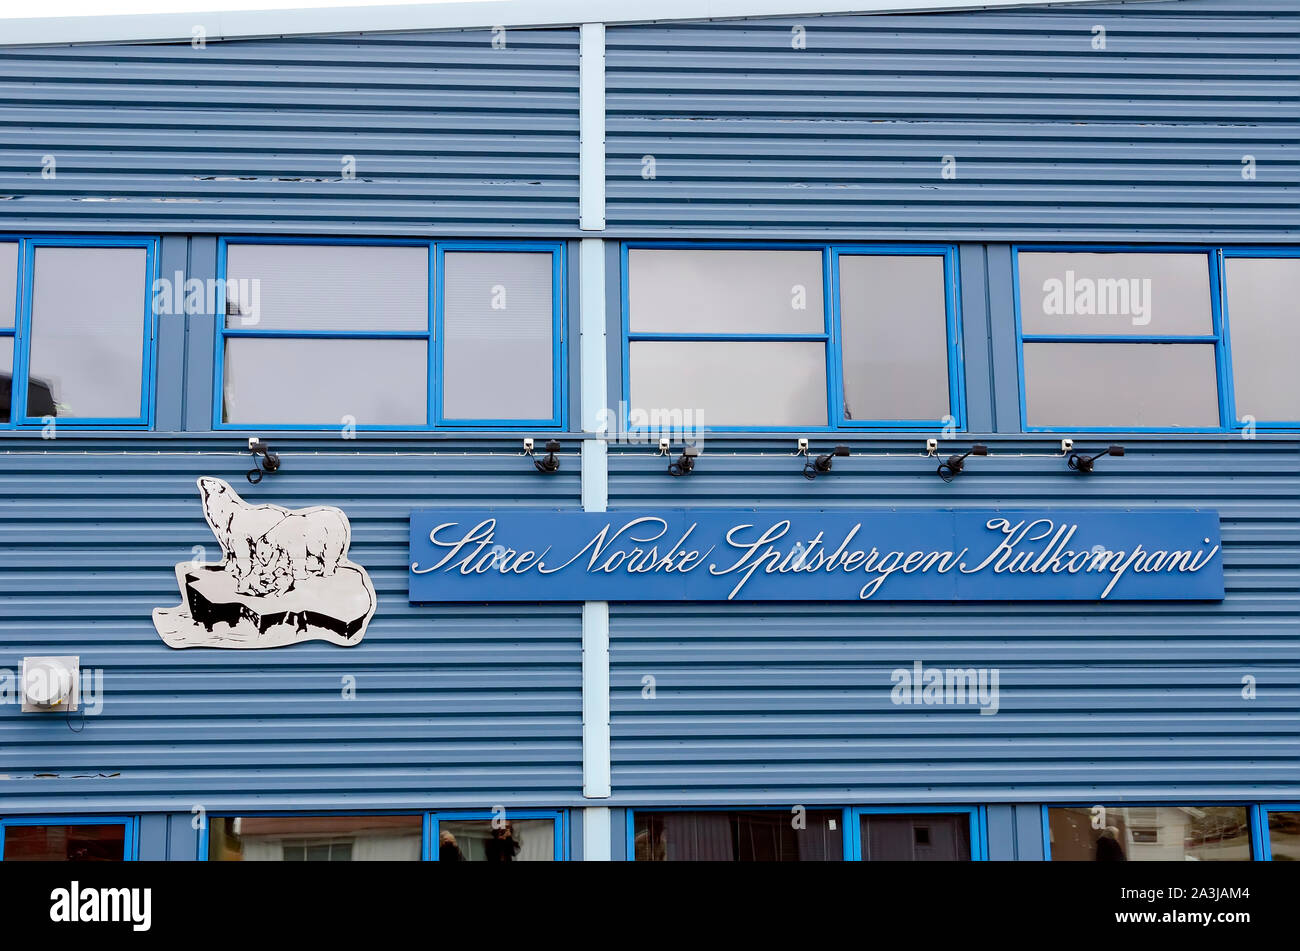 Revestido de metal azul Tienda en Longyearbyen Noruega, el más septentrional del mundo solución Foto de stock